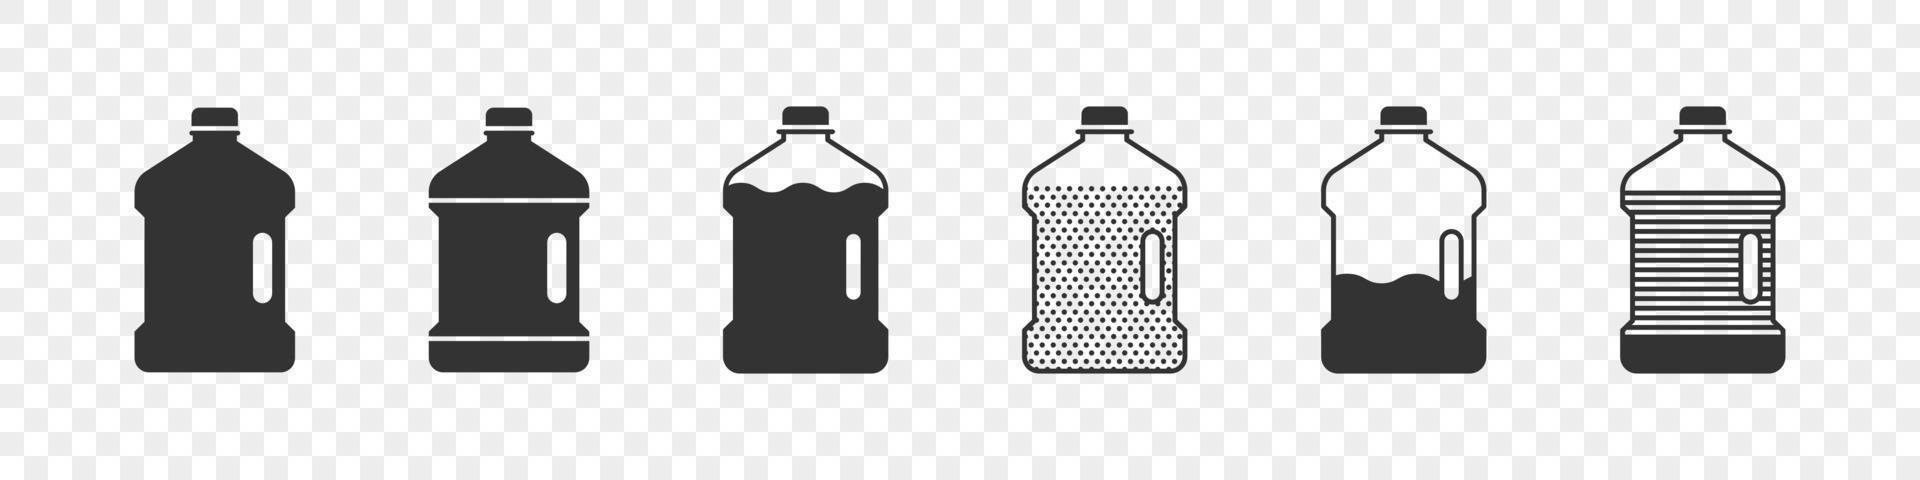 bouteilles en plastique. silhouettes de bouteilles. icônes de concept de bouteilles plates. illustration vectorielle vecteur